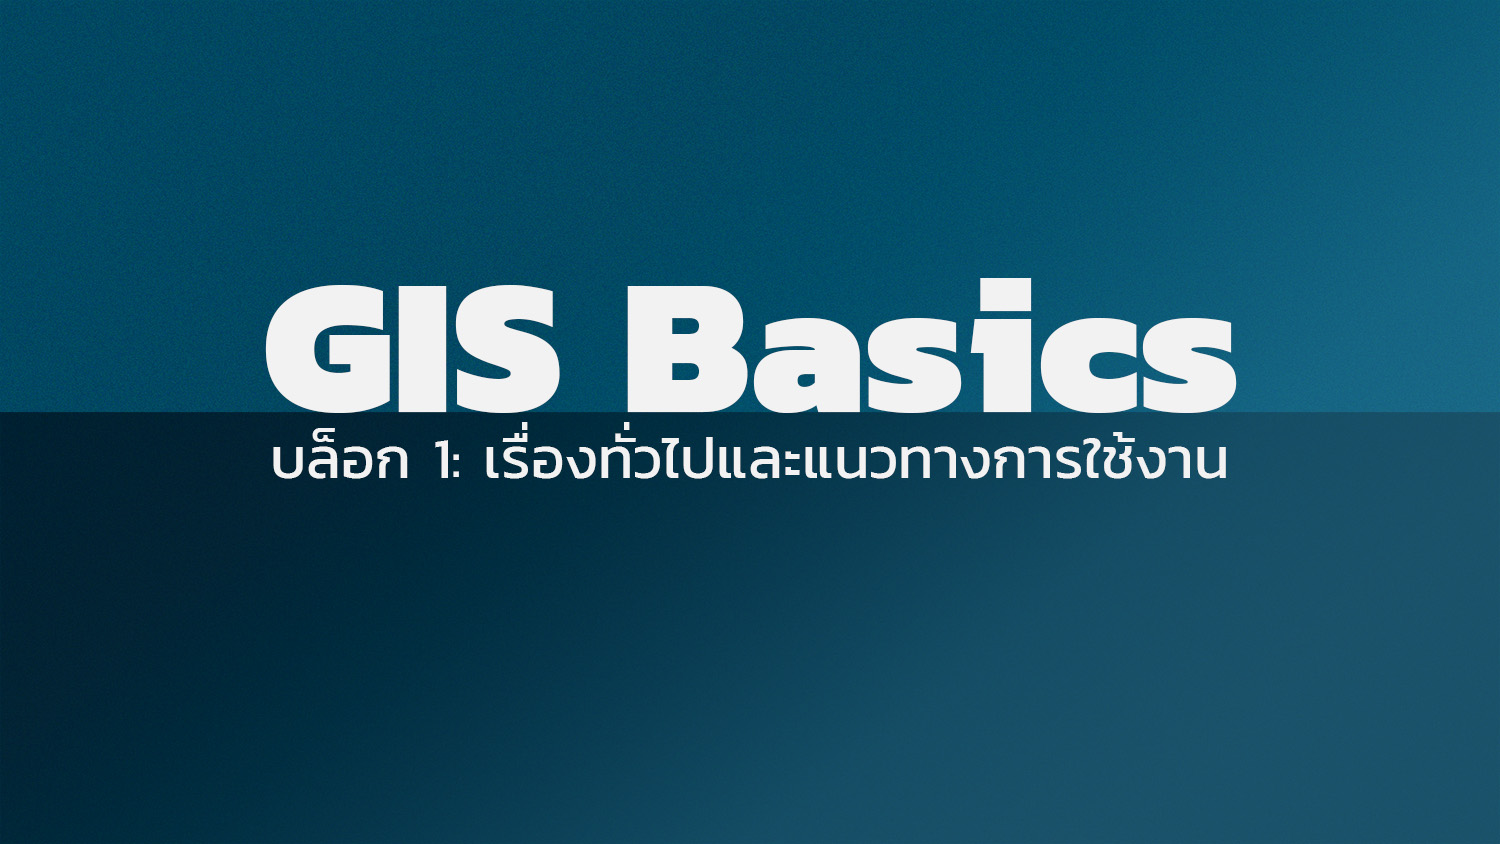 GIS Basics: เรื่องทั่วไปและแนวทางการใช้งาน